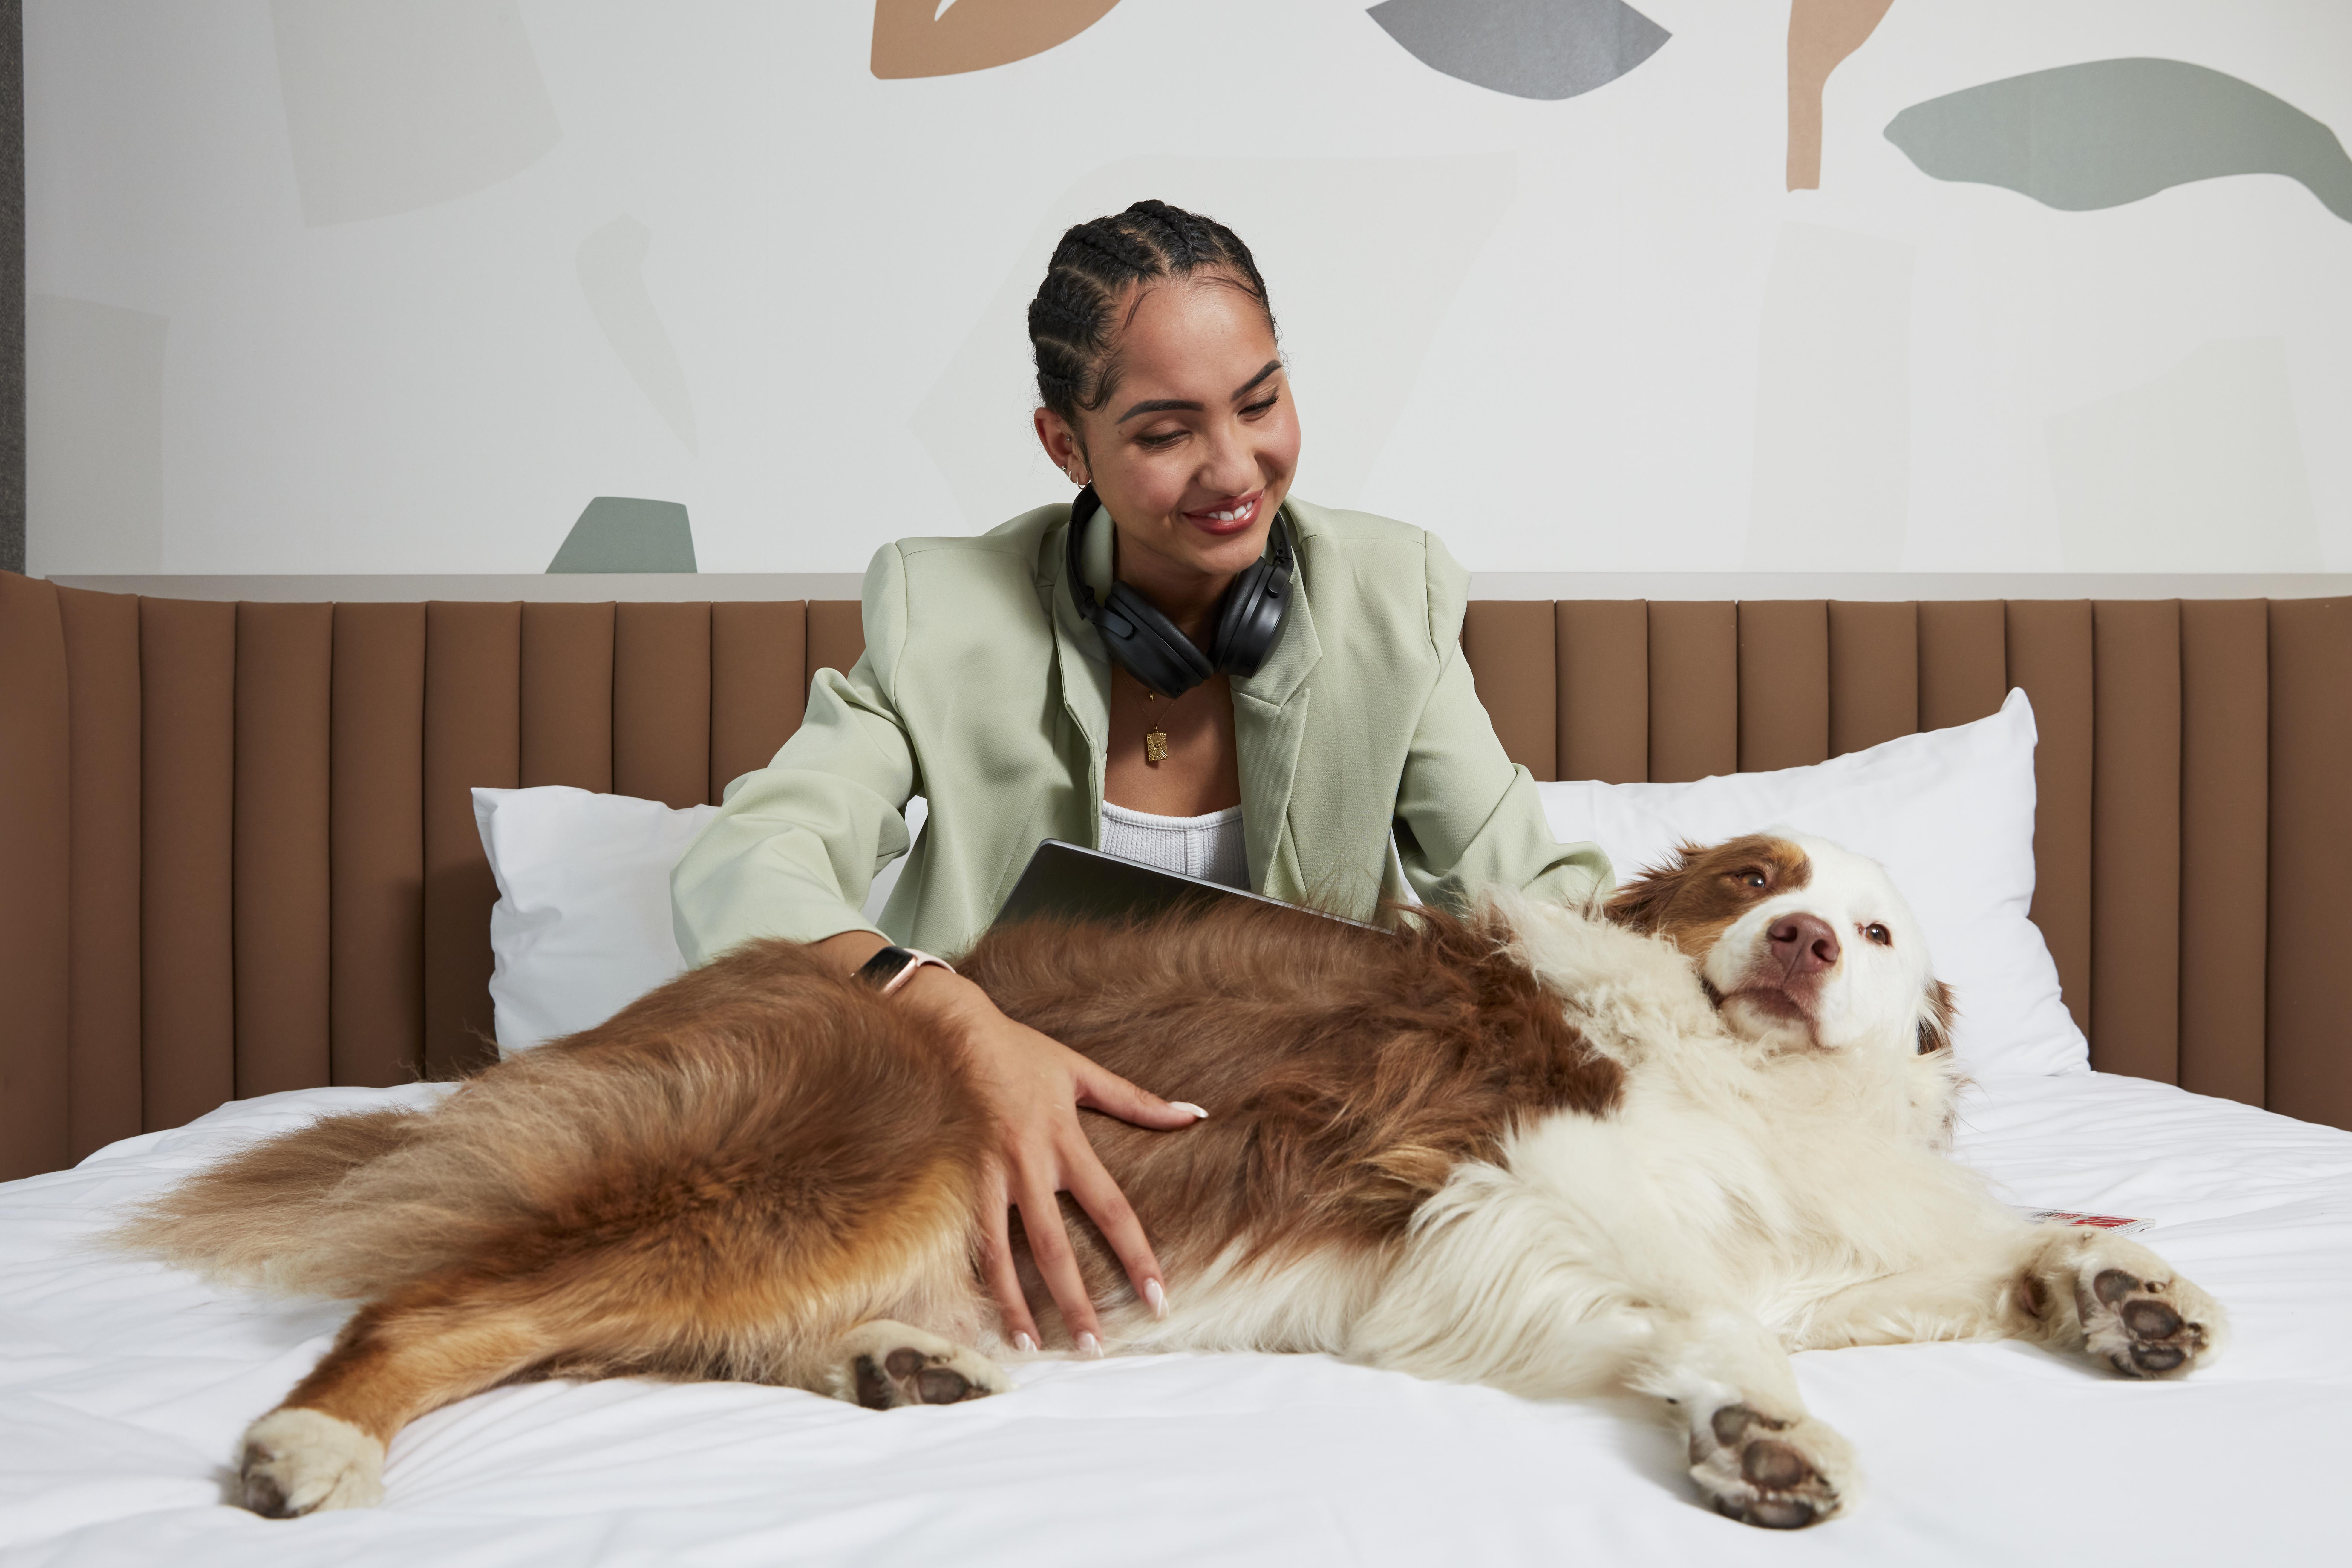 Femme à l'hôtel avec son animal de compagnie (chien)